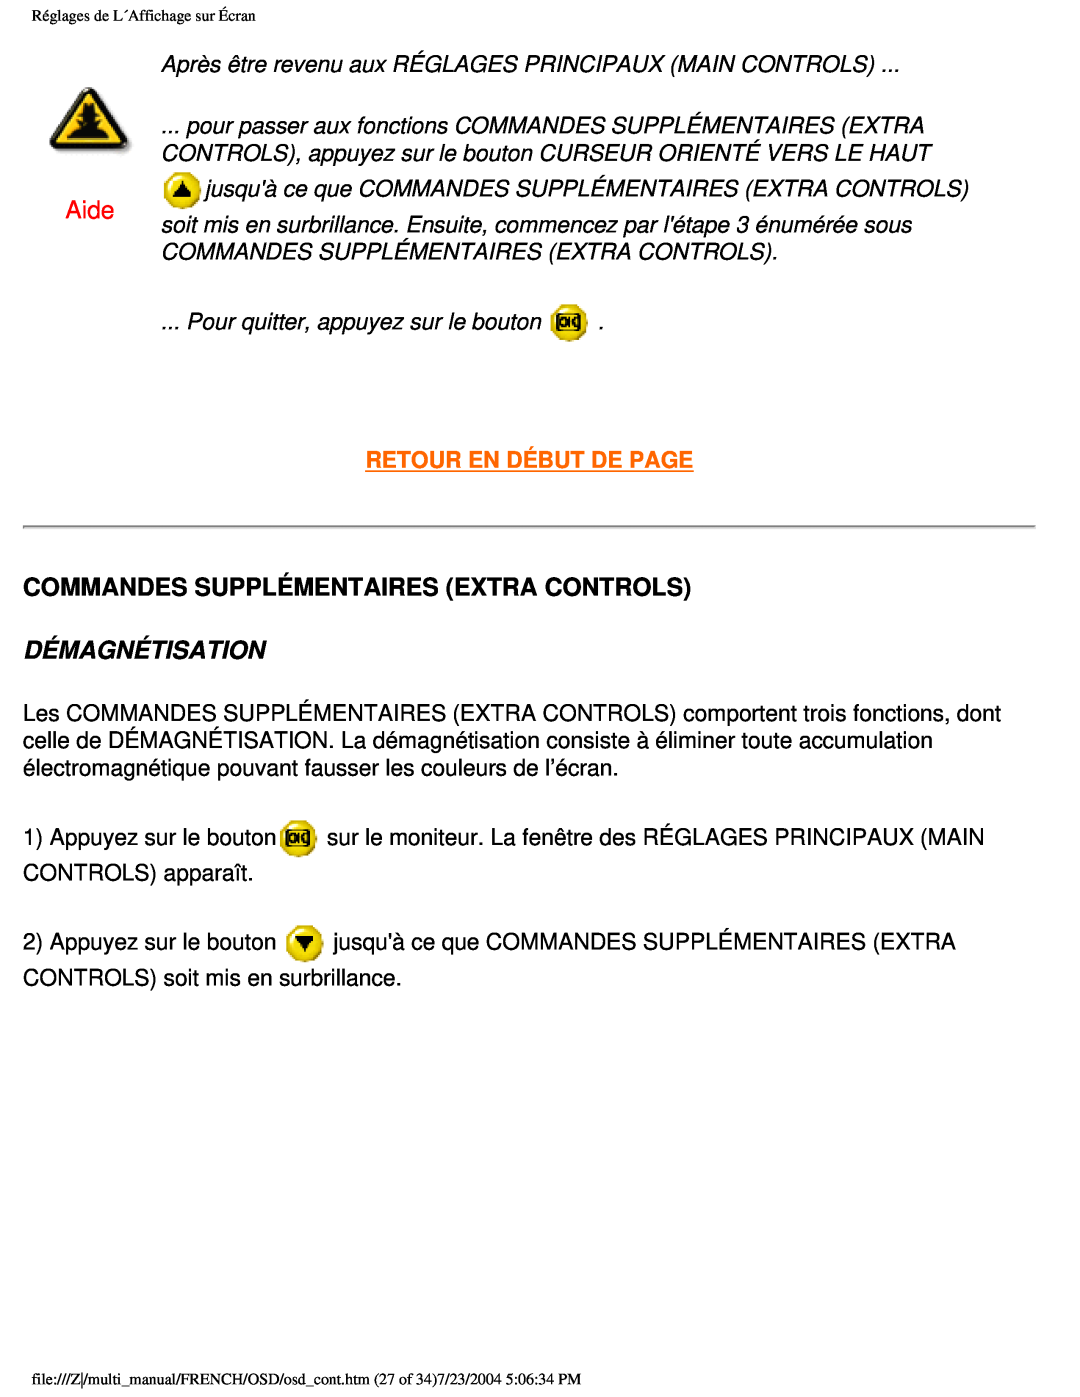 Philips 107B3 user manual Aide, Commandes Supplémentaires Extra Controls, Démagnétisation, Retour En Début De Page 